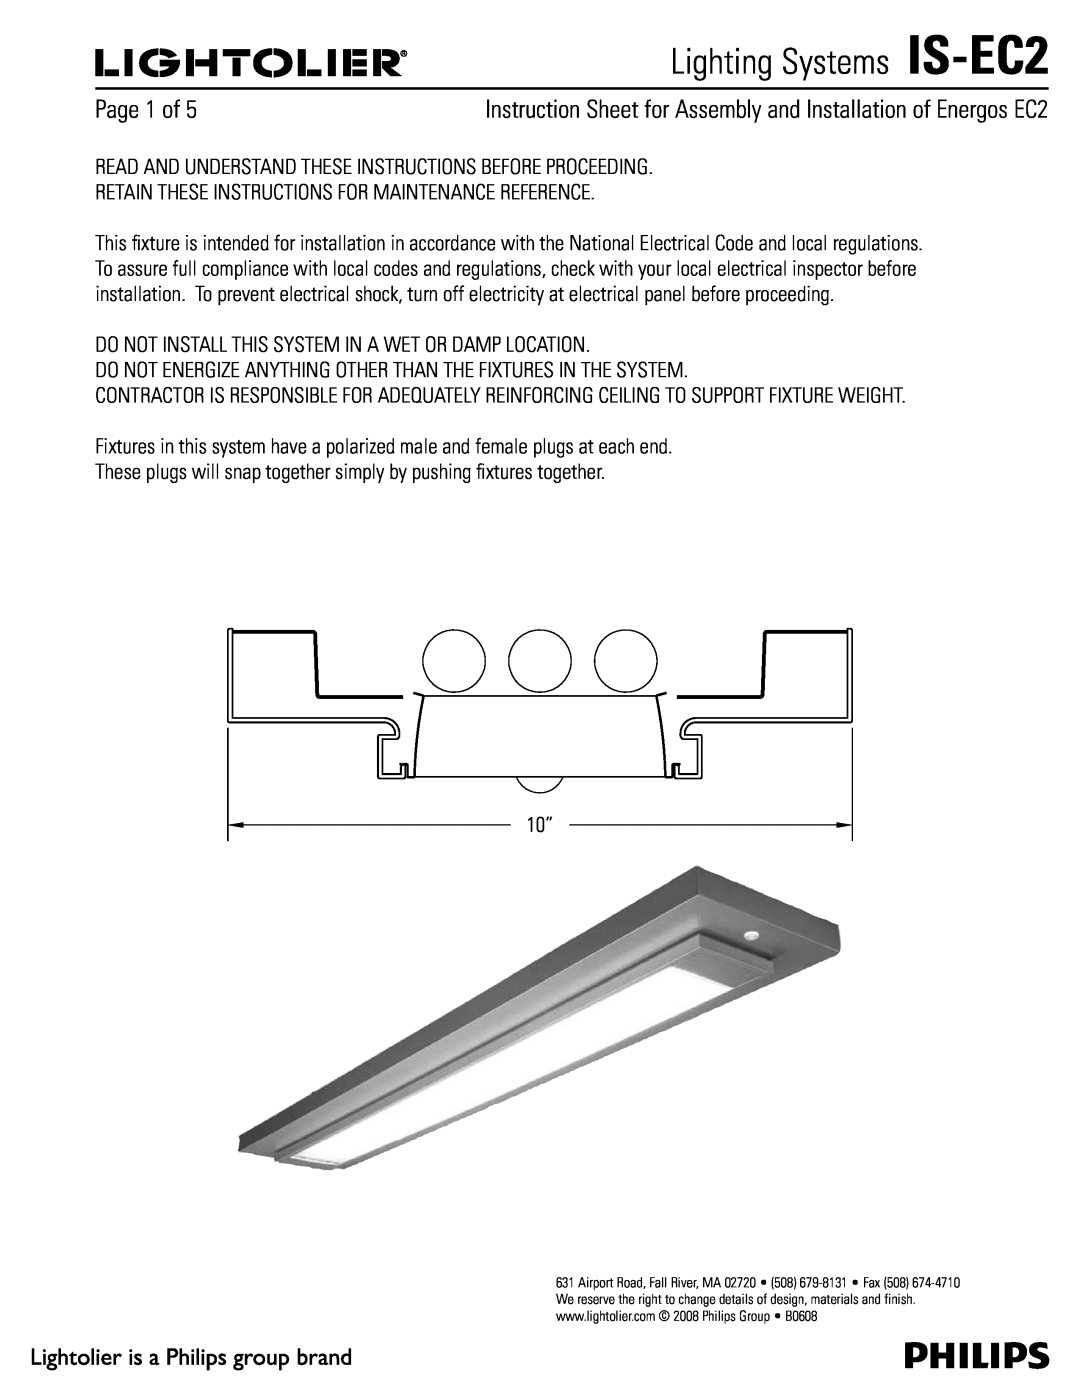 Lightolier manual Lighting Systems IS-EC2, 1BHFPG 